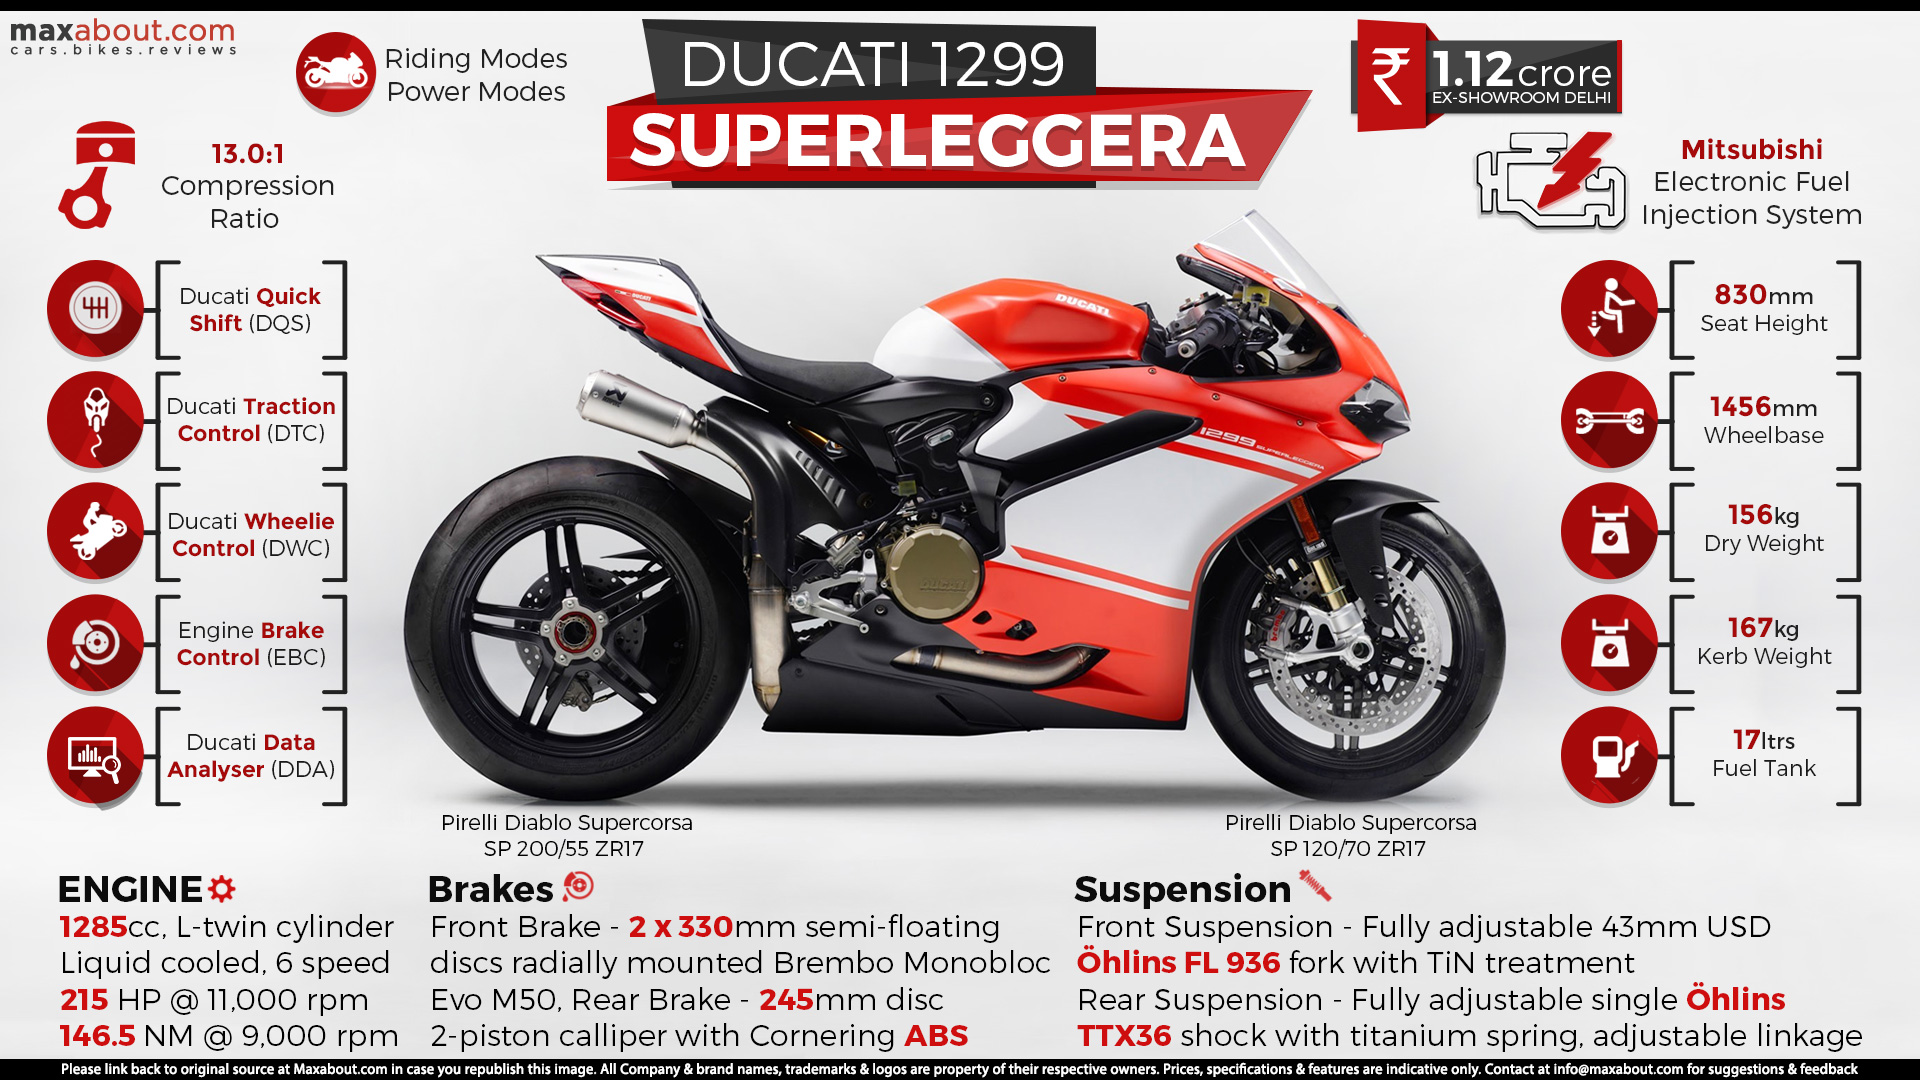 Ducati 1299 Superleggera Wallpaper Hd